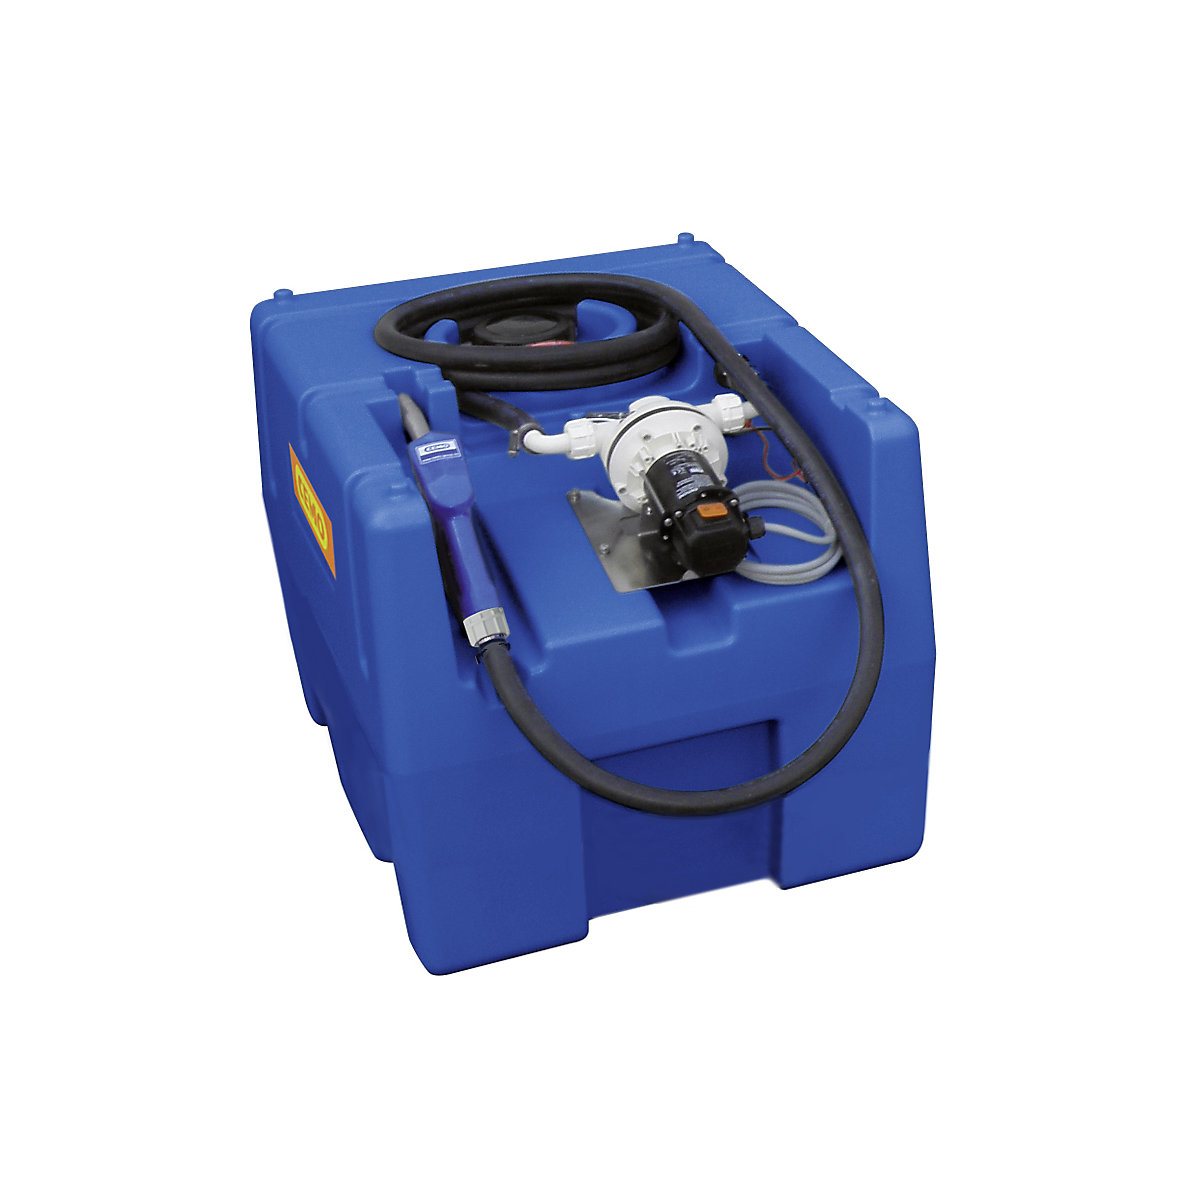 CEMO Tankanlage für AUS 32 (AdBlue®), Inhalt 200 l, mit Automatik-Zapfventil, Elektropumpe 24 V, Breite 600 mm